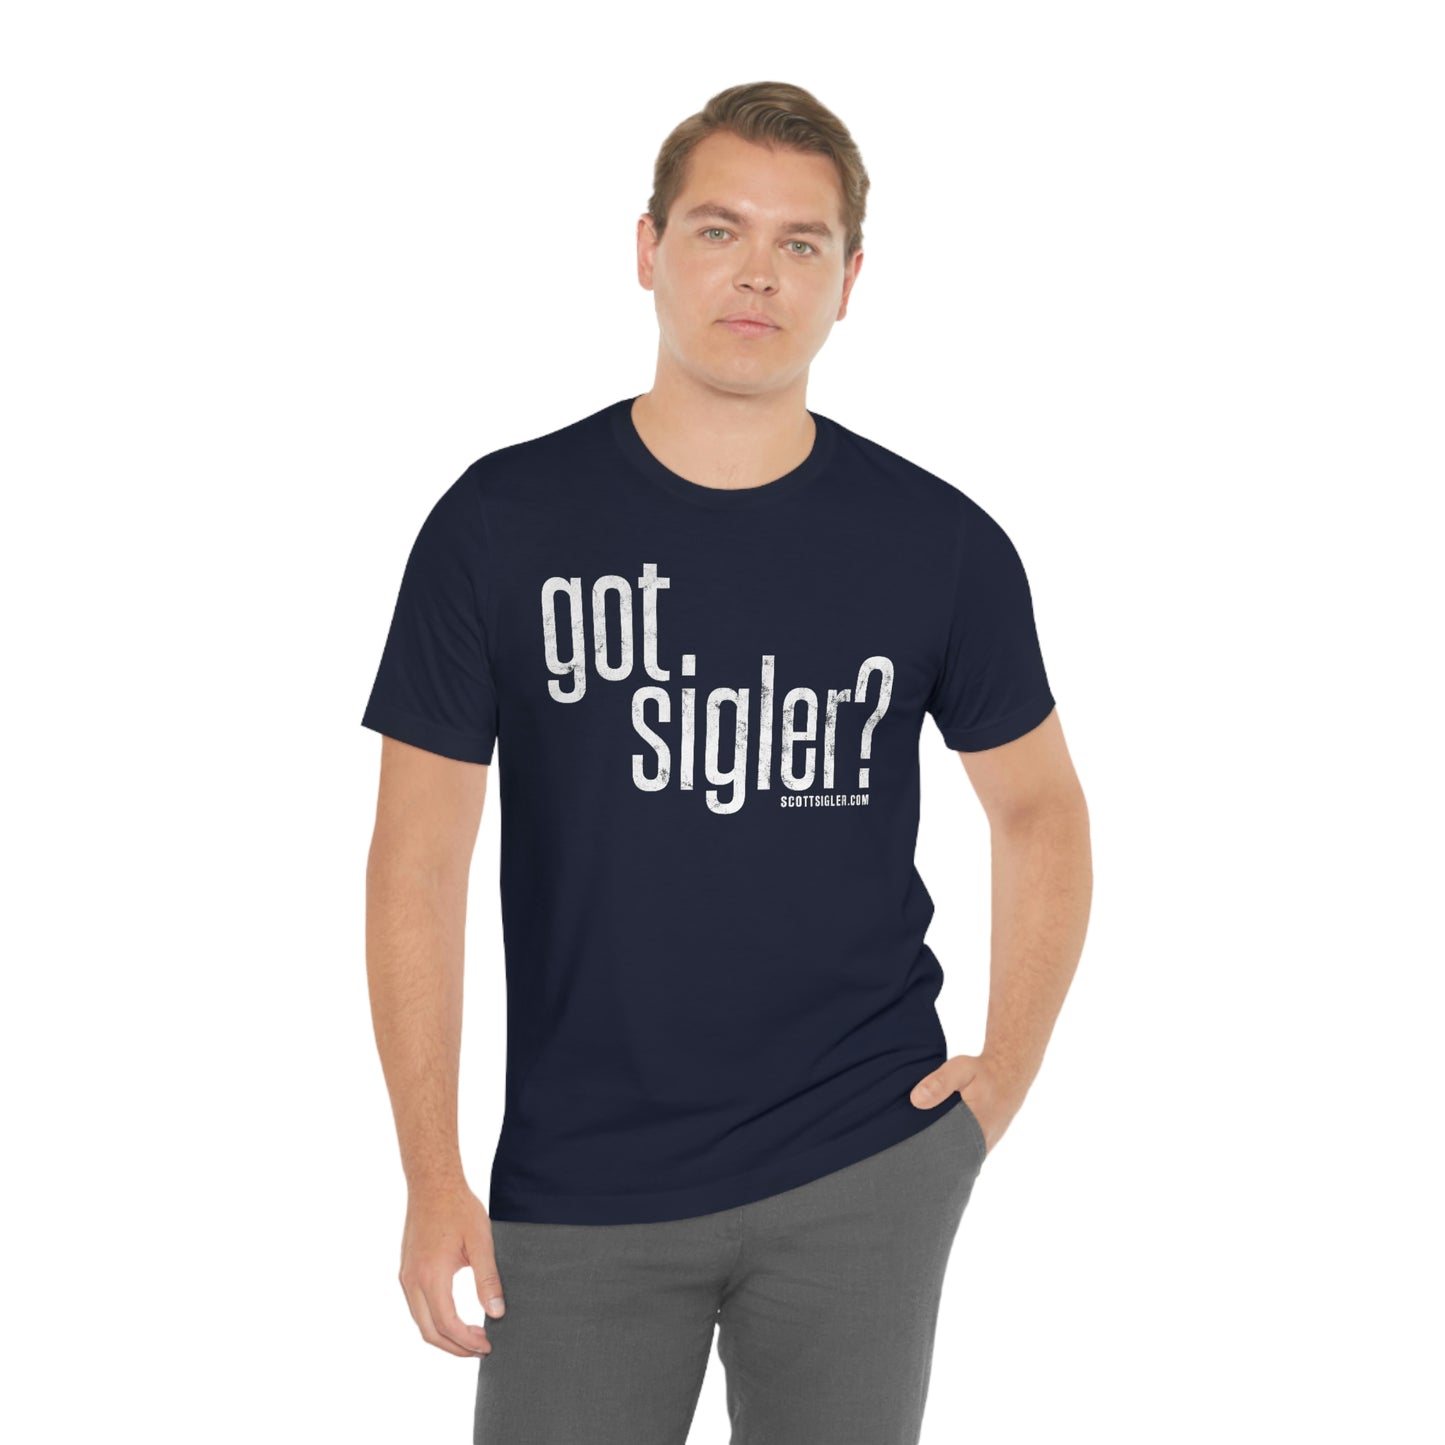 Got Sigler?